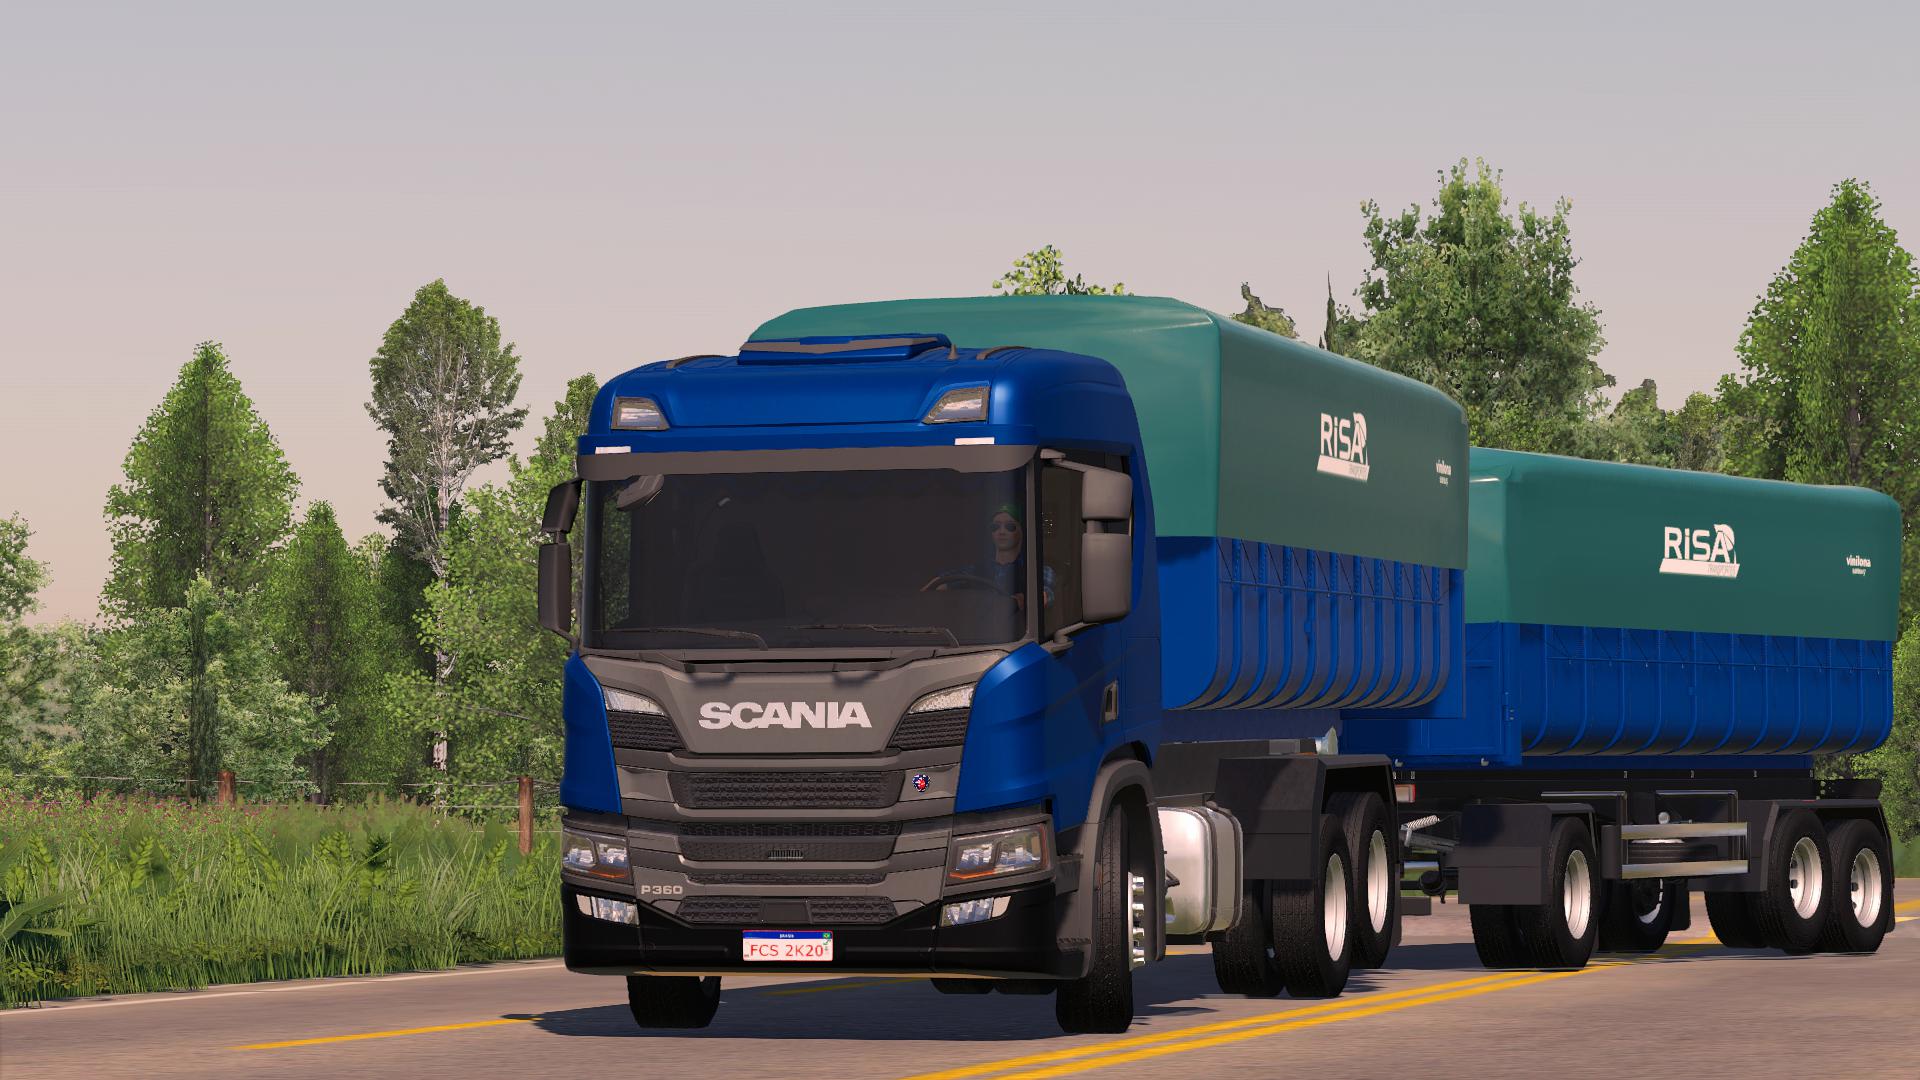 FS19 Scania Pack V6 0 Farming Simulator 19 Mods Club